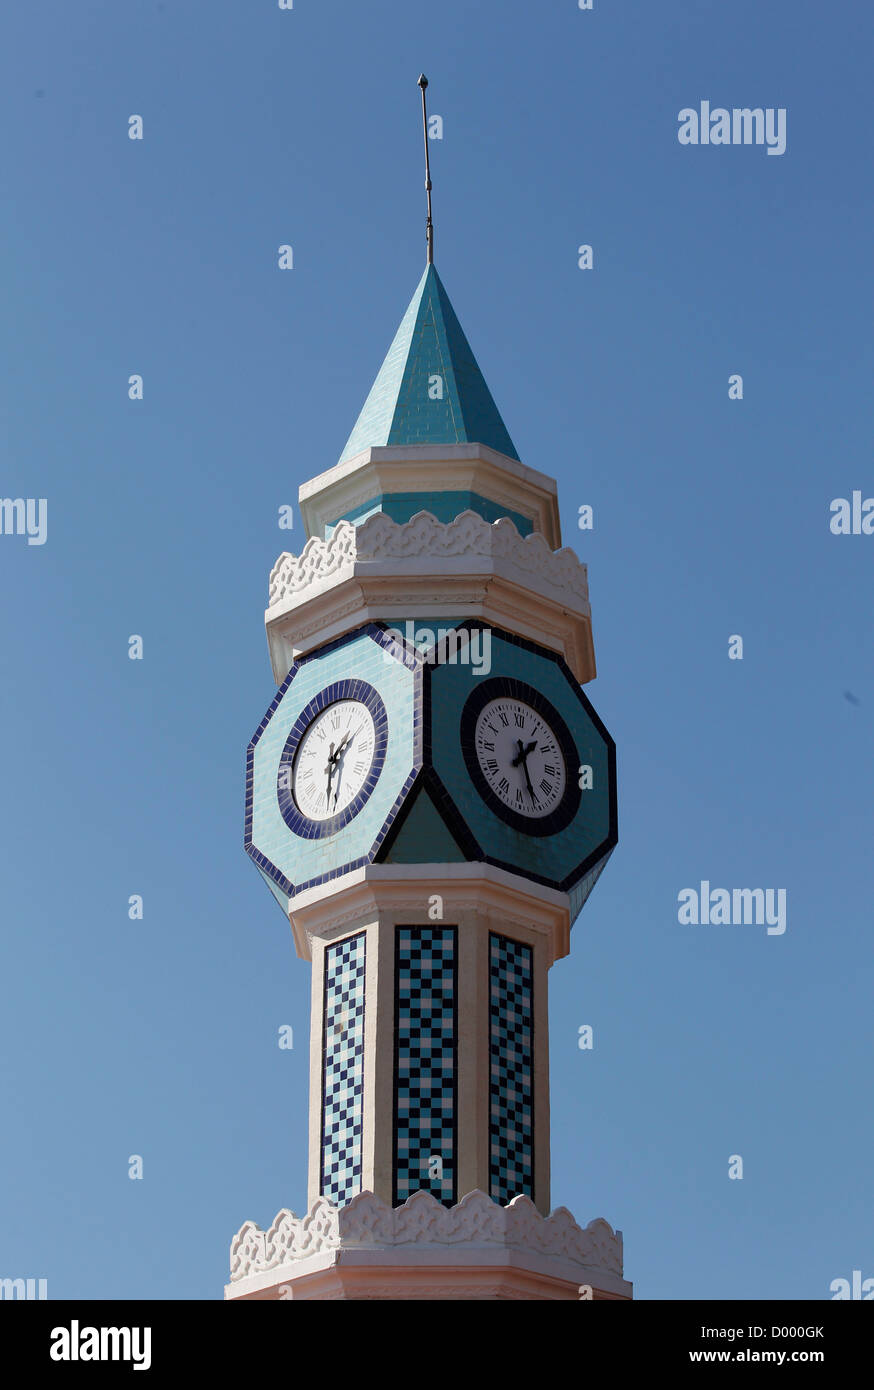 Torre con reloj y azulejos de cerámica azul, Manavgat, Turquía Foto de stock